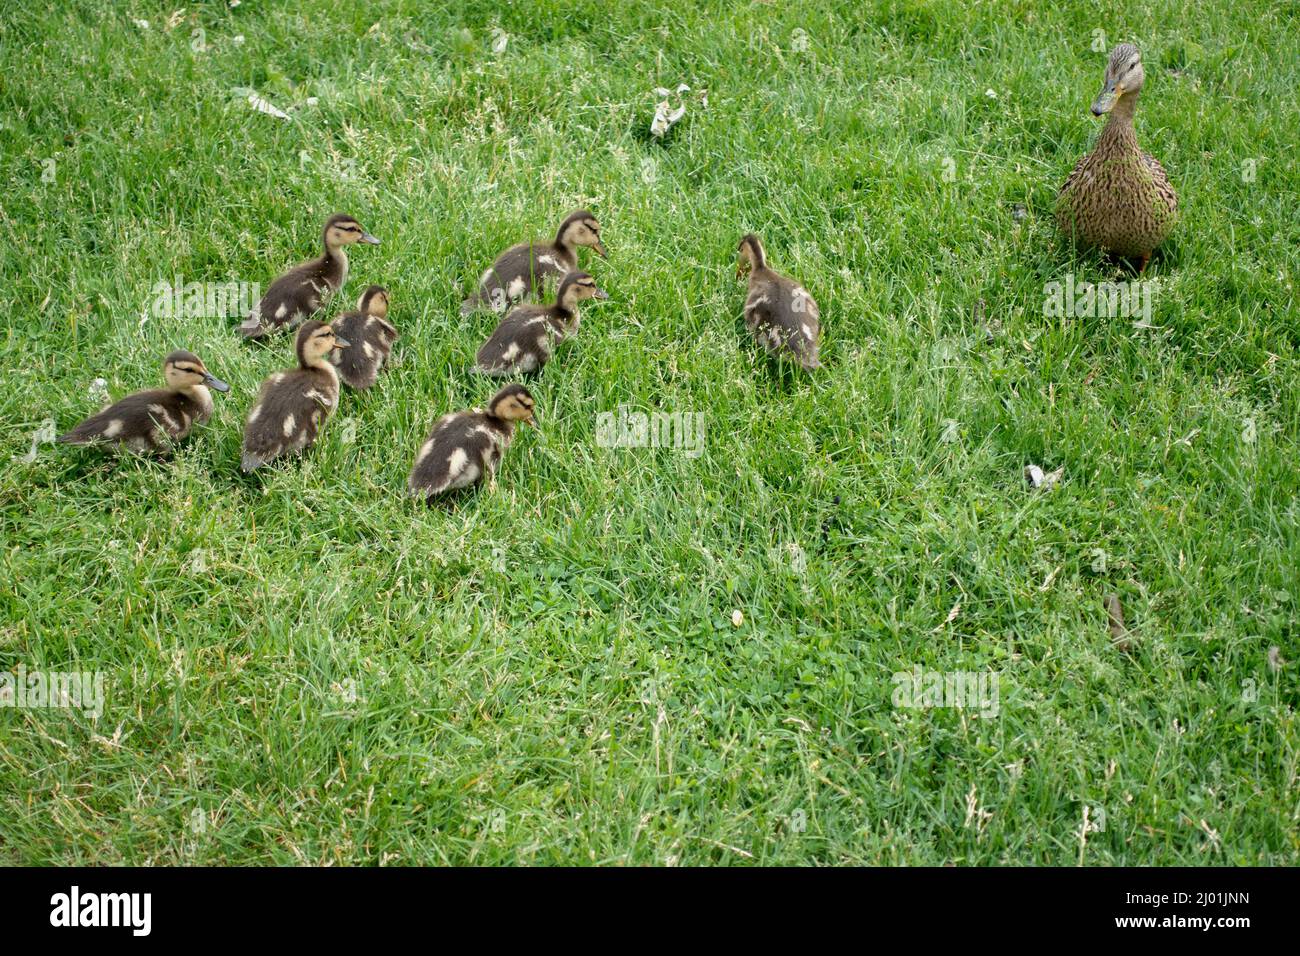 Mère canard avec ses canetons les gardant en ligne au parc Loring. Minneapolis Minnesota MN États-Unis Banque D'Images